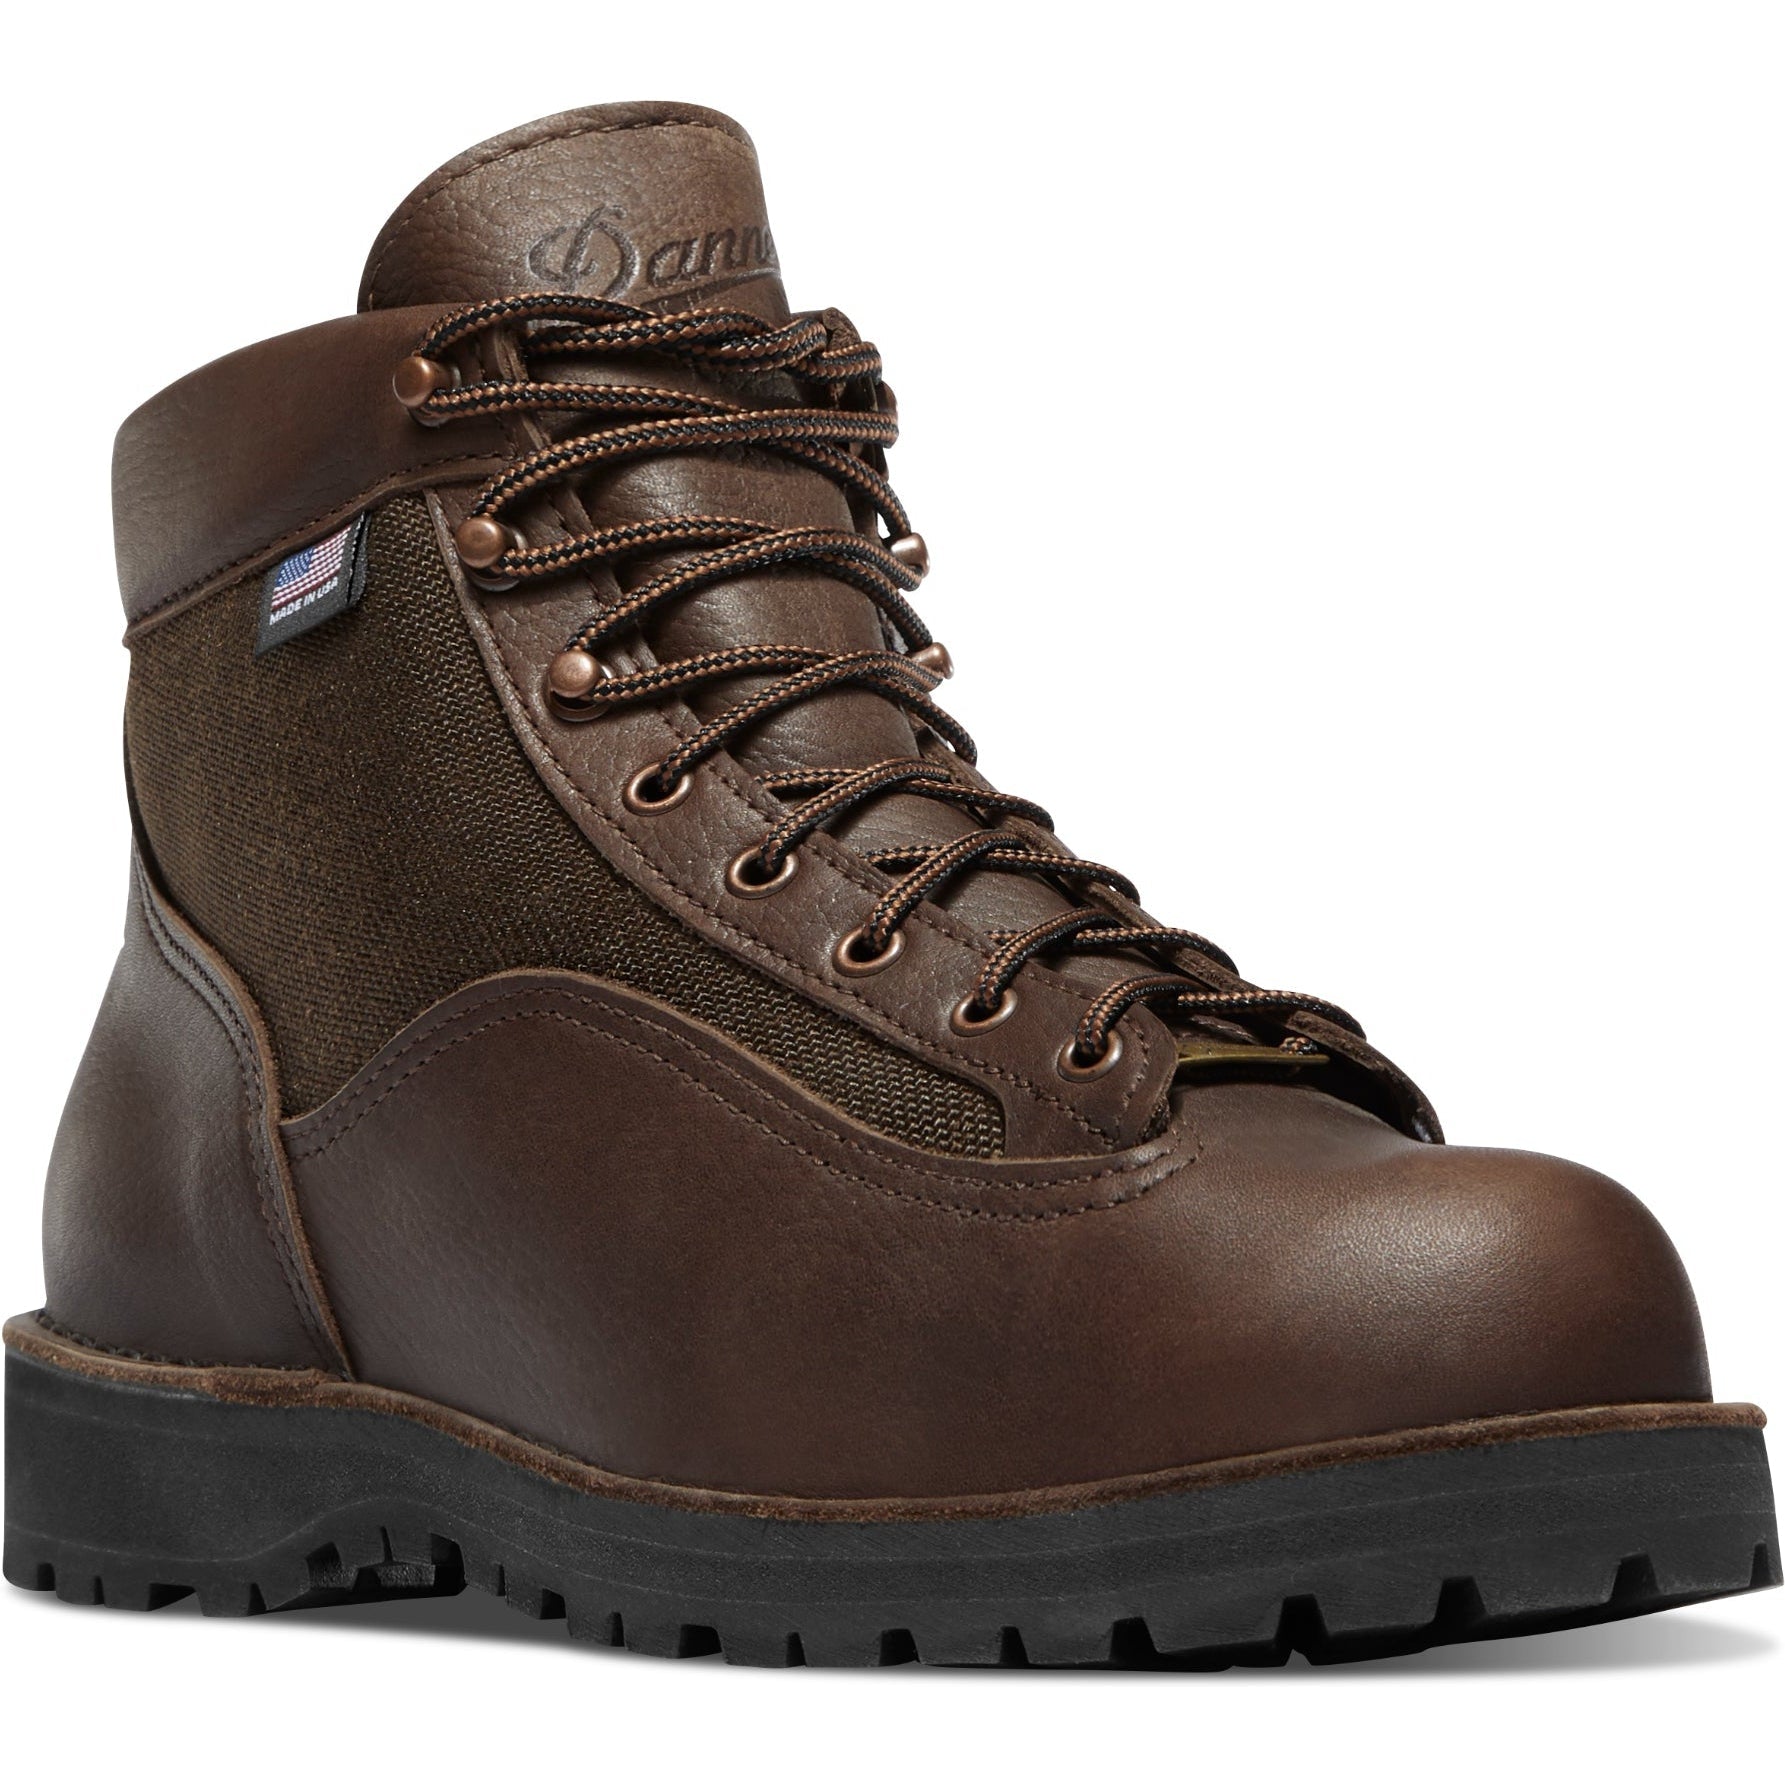 Danner Men's Light II 6" WP USA Made Hiking Boot - Dark Brown - 33020 6 / Wide / Dark Brown - Overlook Boots